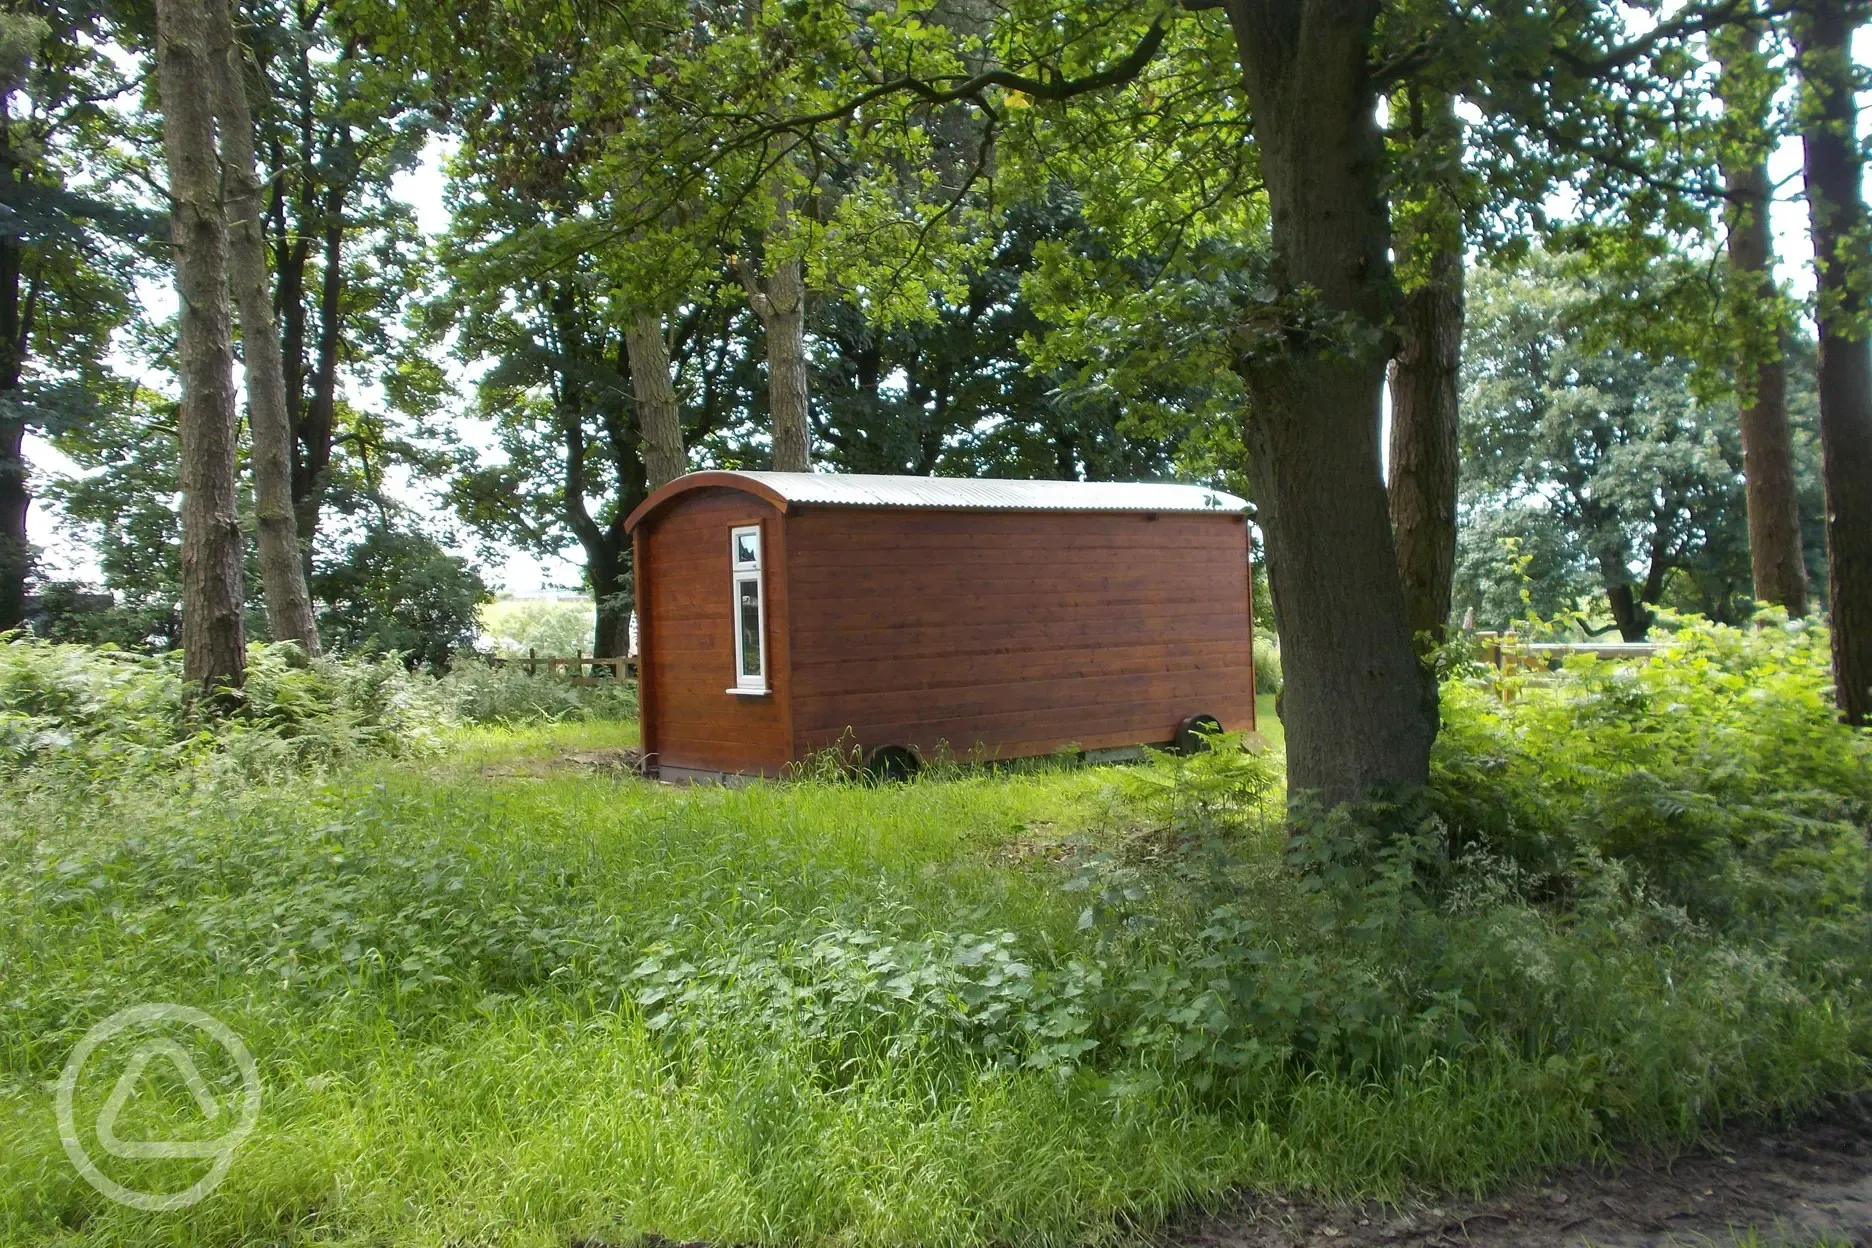 Shepherd's hut setting